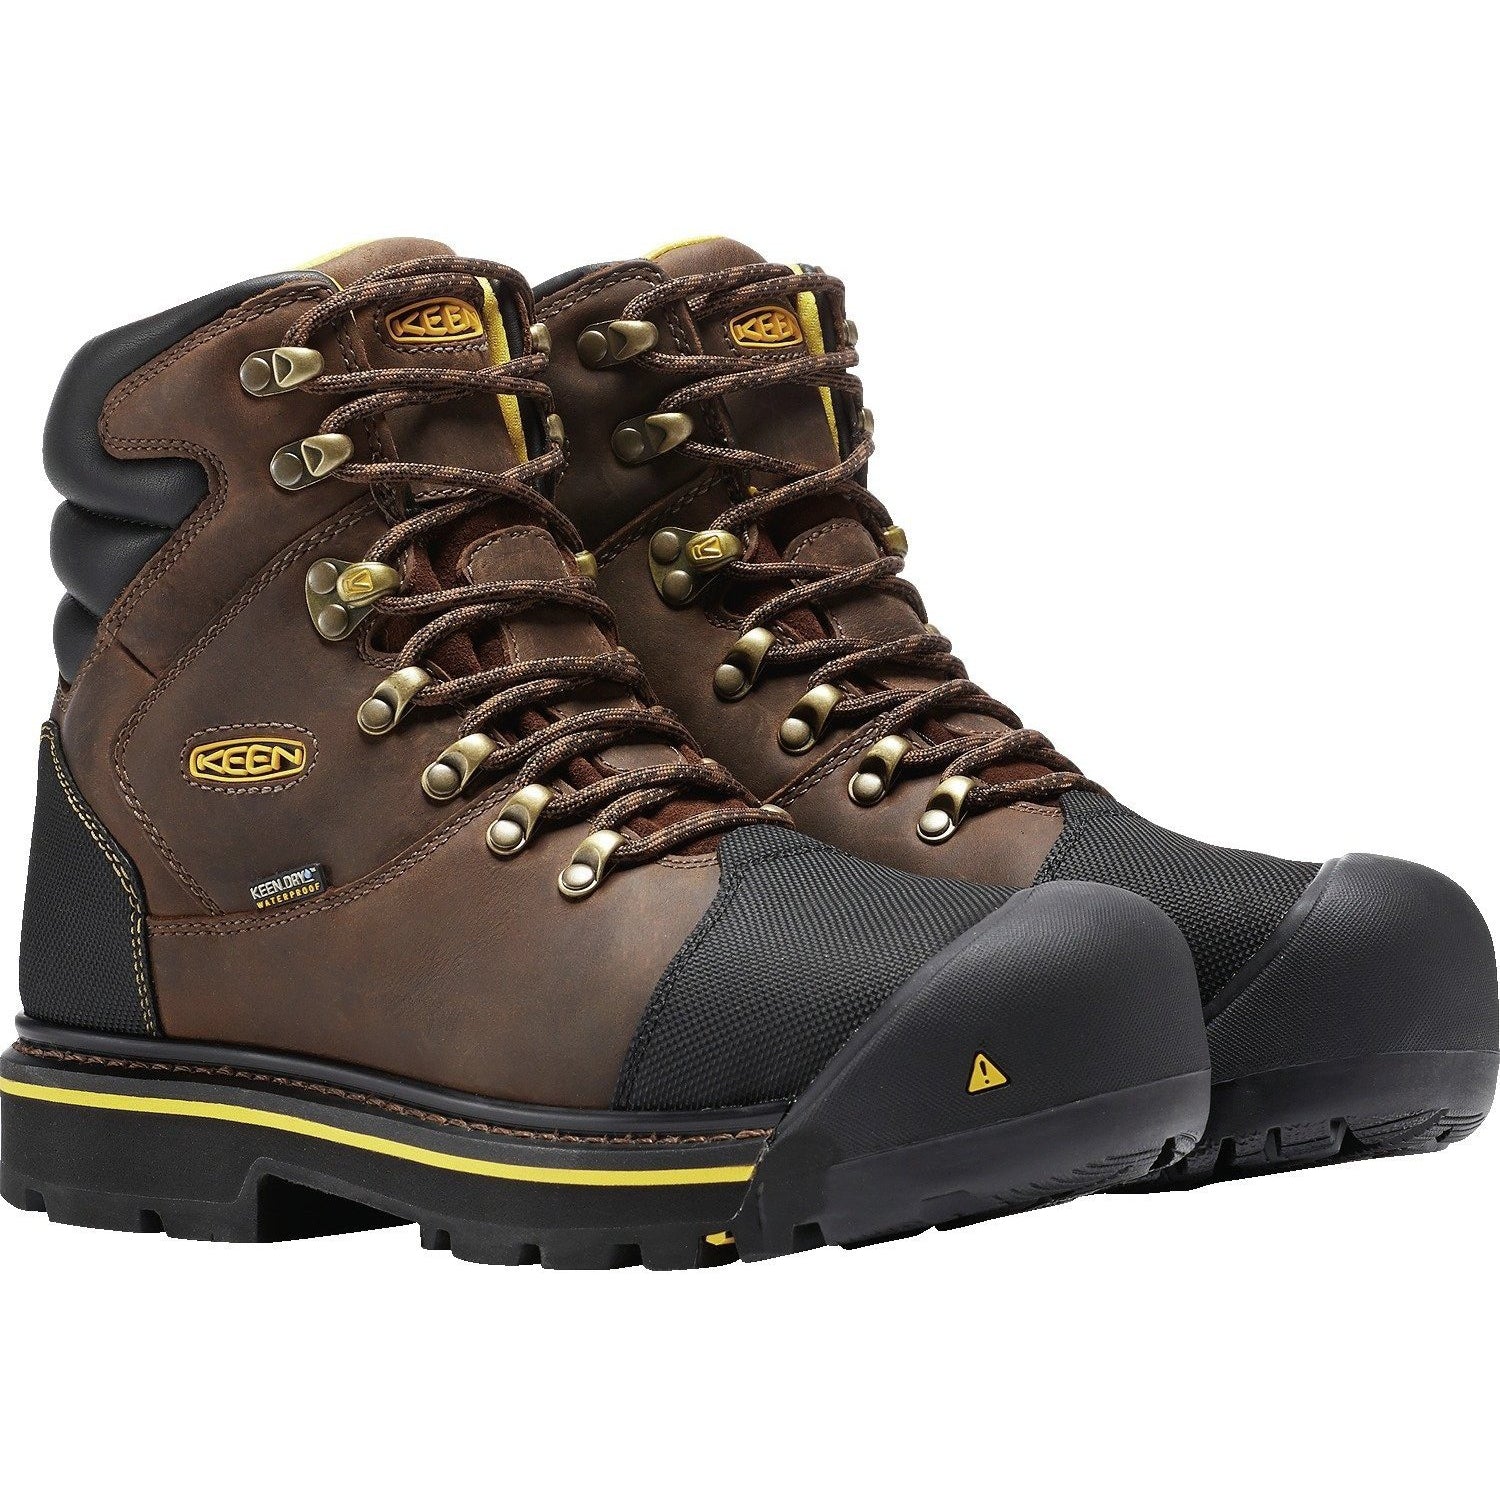 Keen Utility Men's Milwaukee Steel Toe WP Work Boots - Brown - 1009174 8.5 / Medium / Brown - Overlook Boots